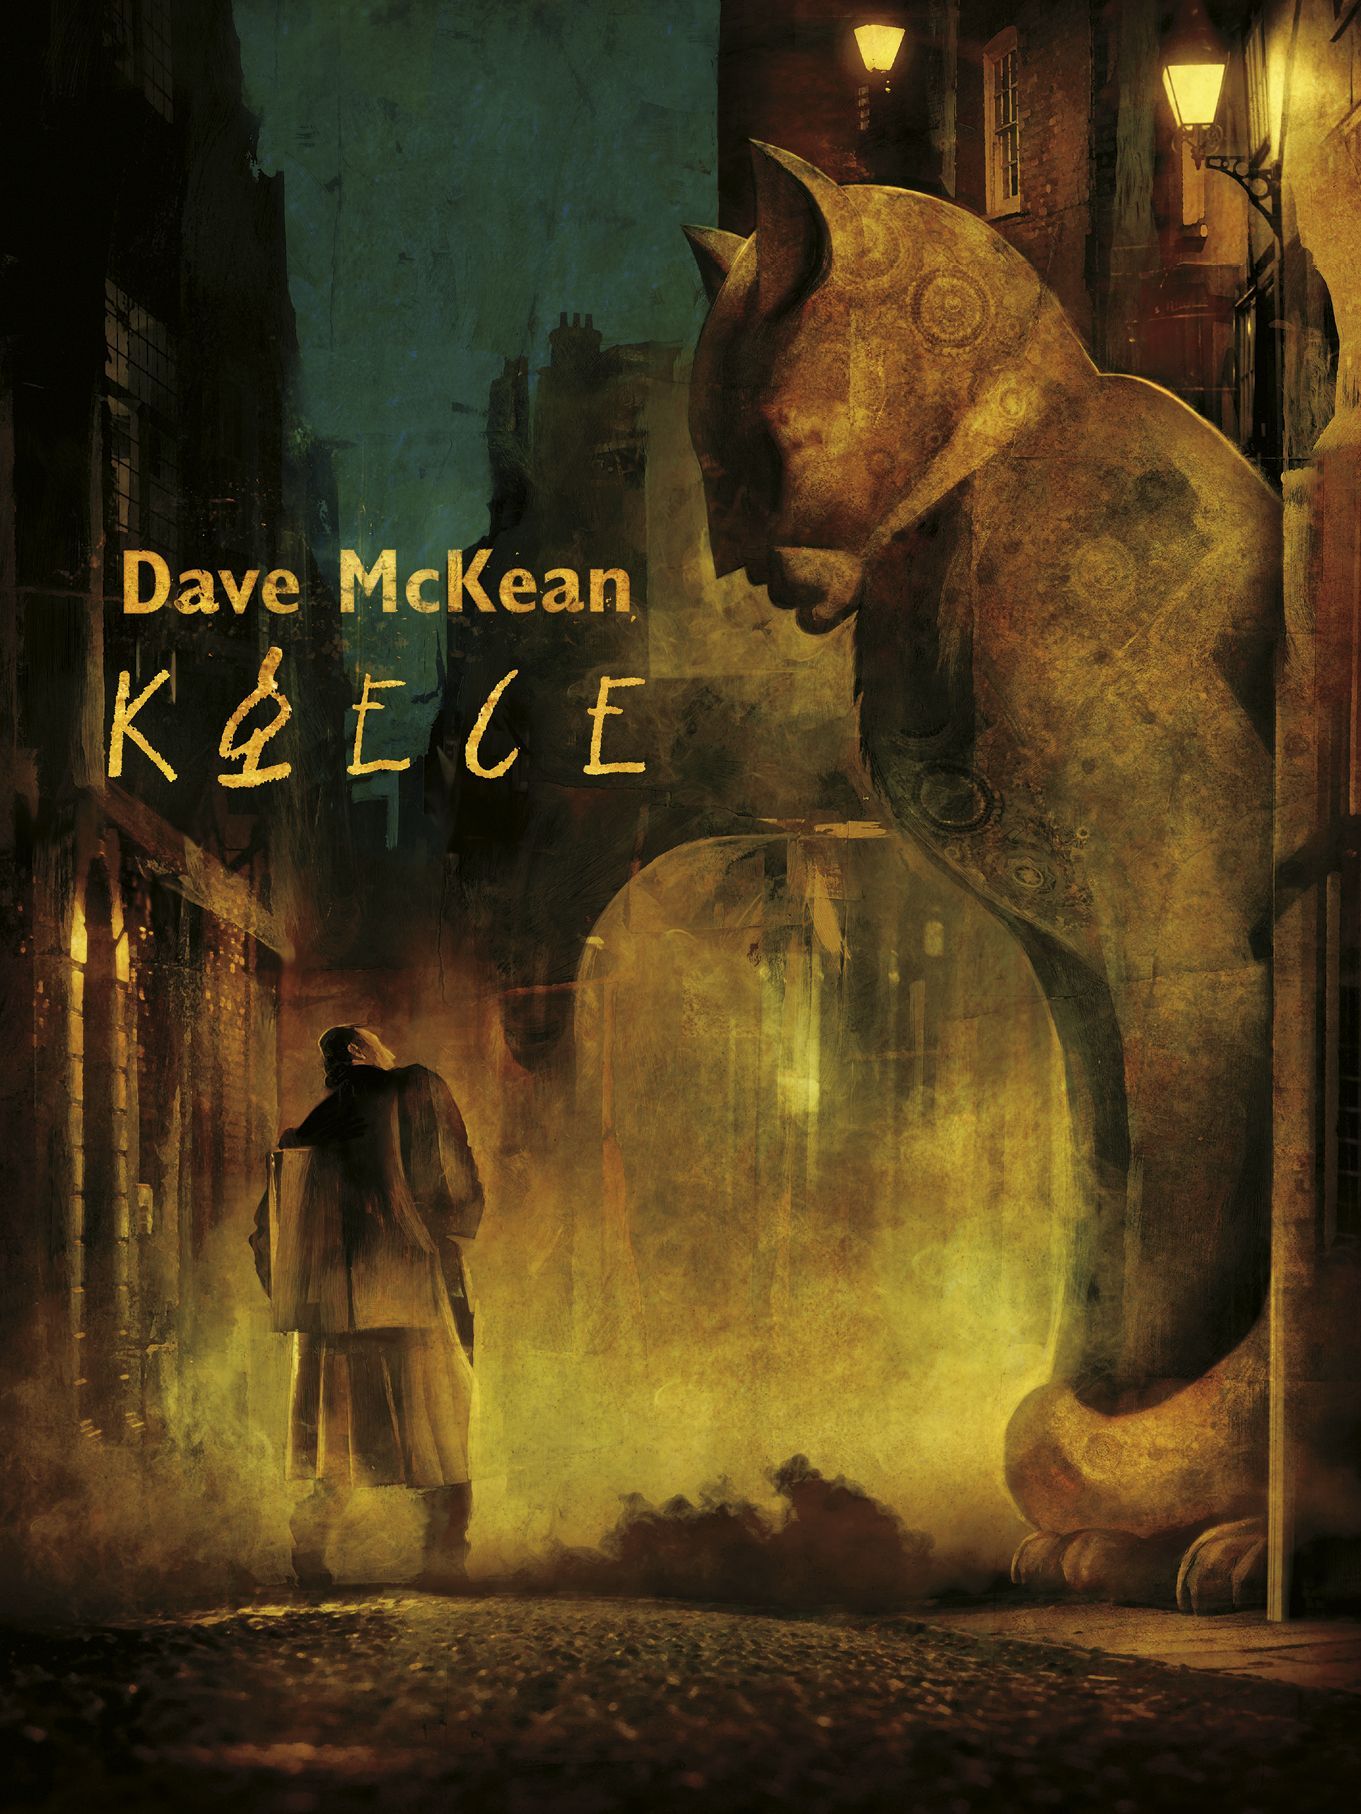 Dave McKean: Klece